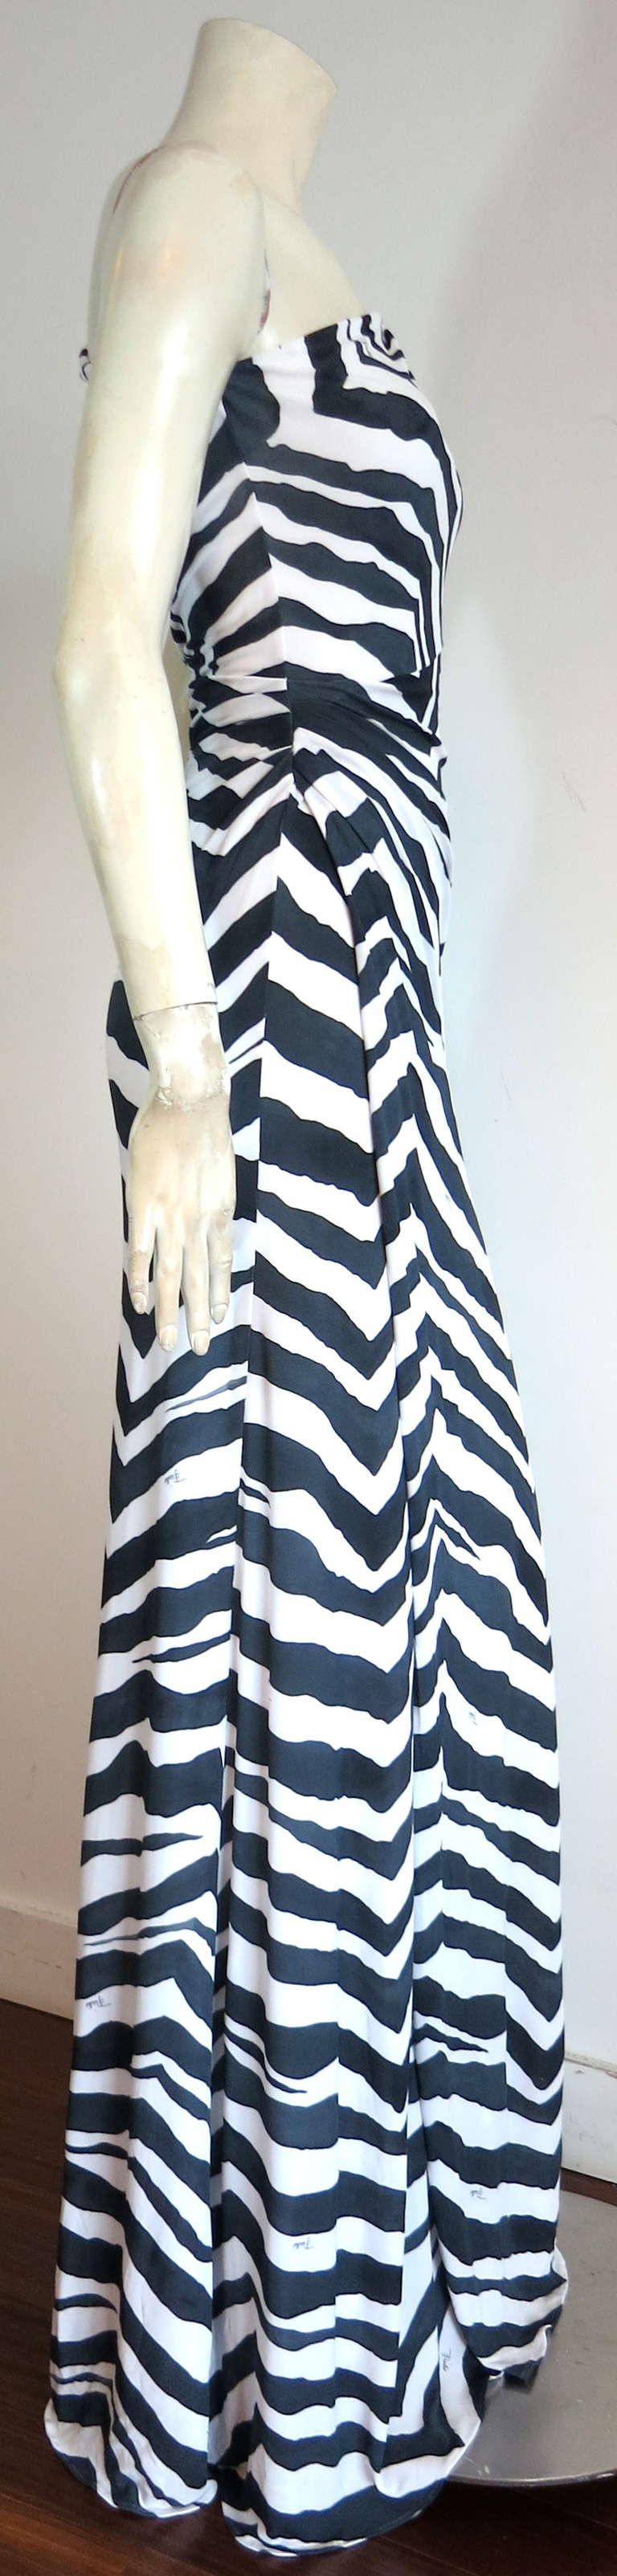 EMILIO PUCCI Signed zebra dress 4